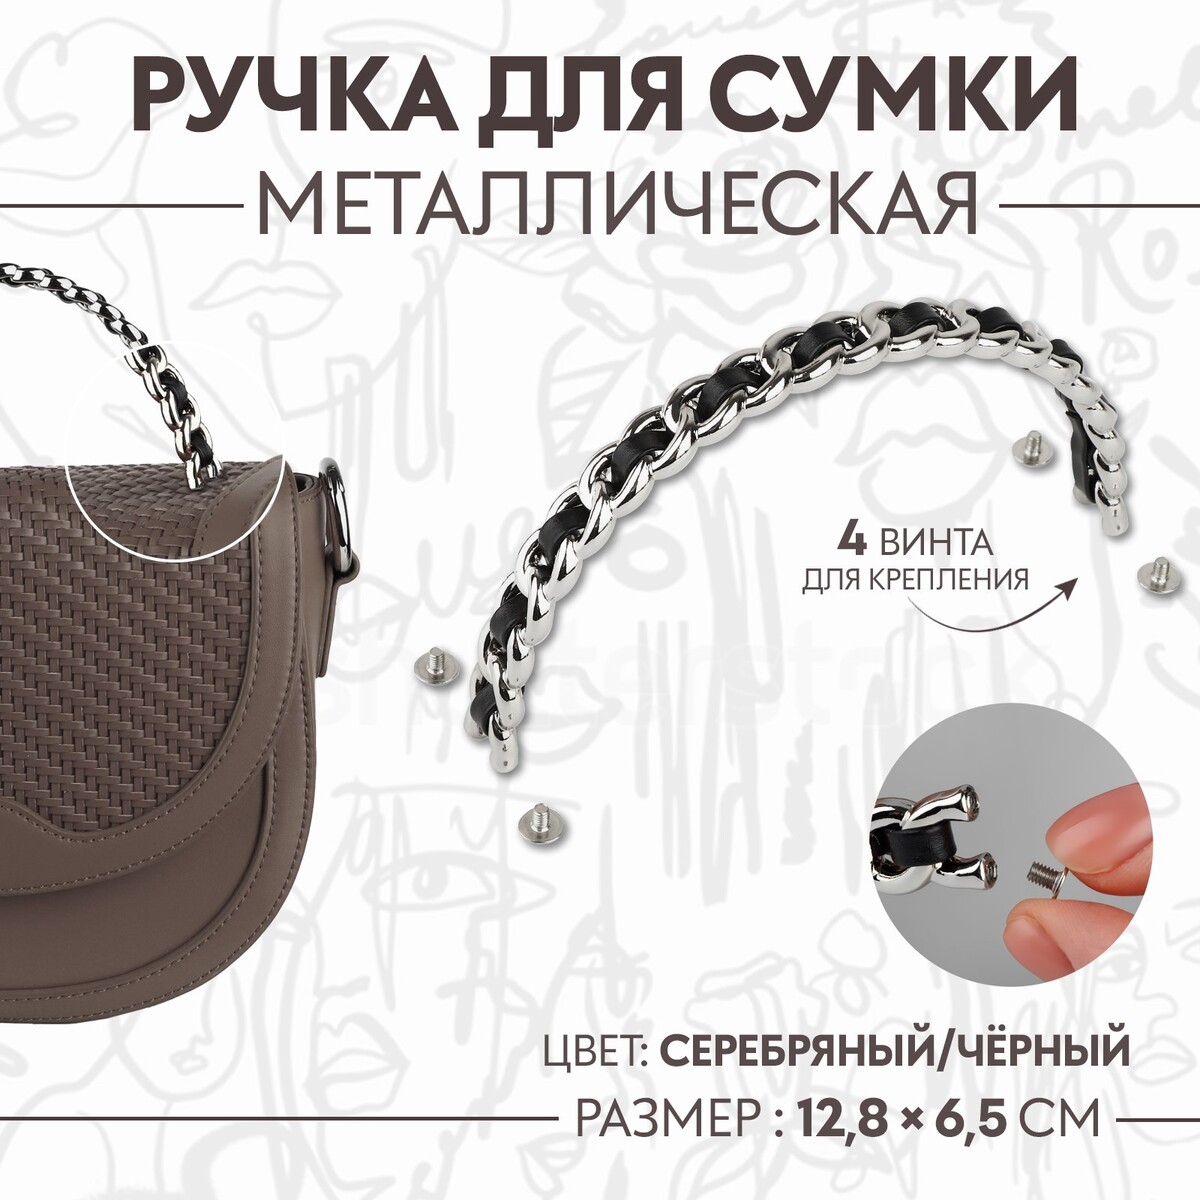 Ручка для сумки, металлическая, с винтами для крепления, 12,8 × 6,5 см, цвет серебряный/черный мыльница металлическая wasserkraft leine 5069 9060426